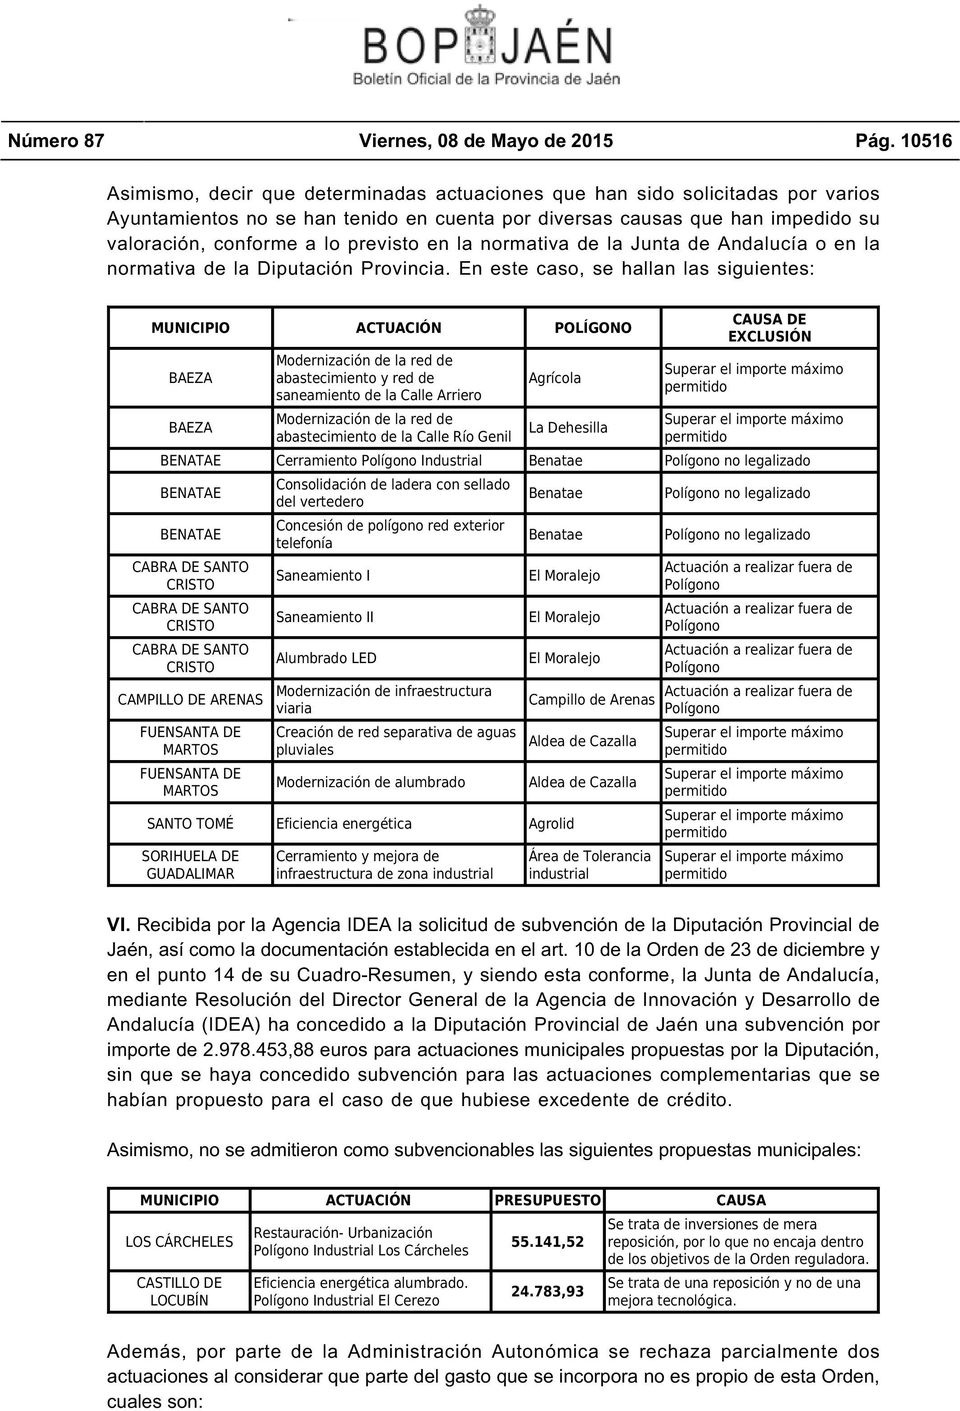 previsto en la normativa de la Junta de Andalucía o en la normativa de la Diputación Provincia.